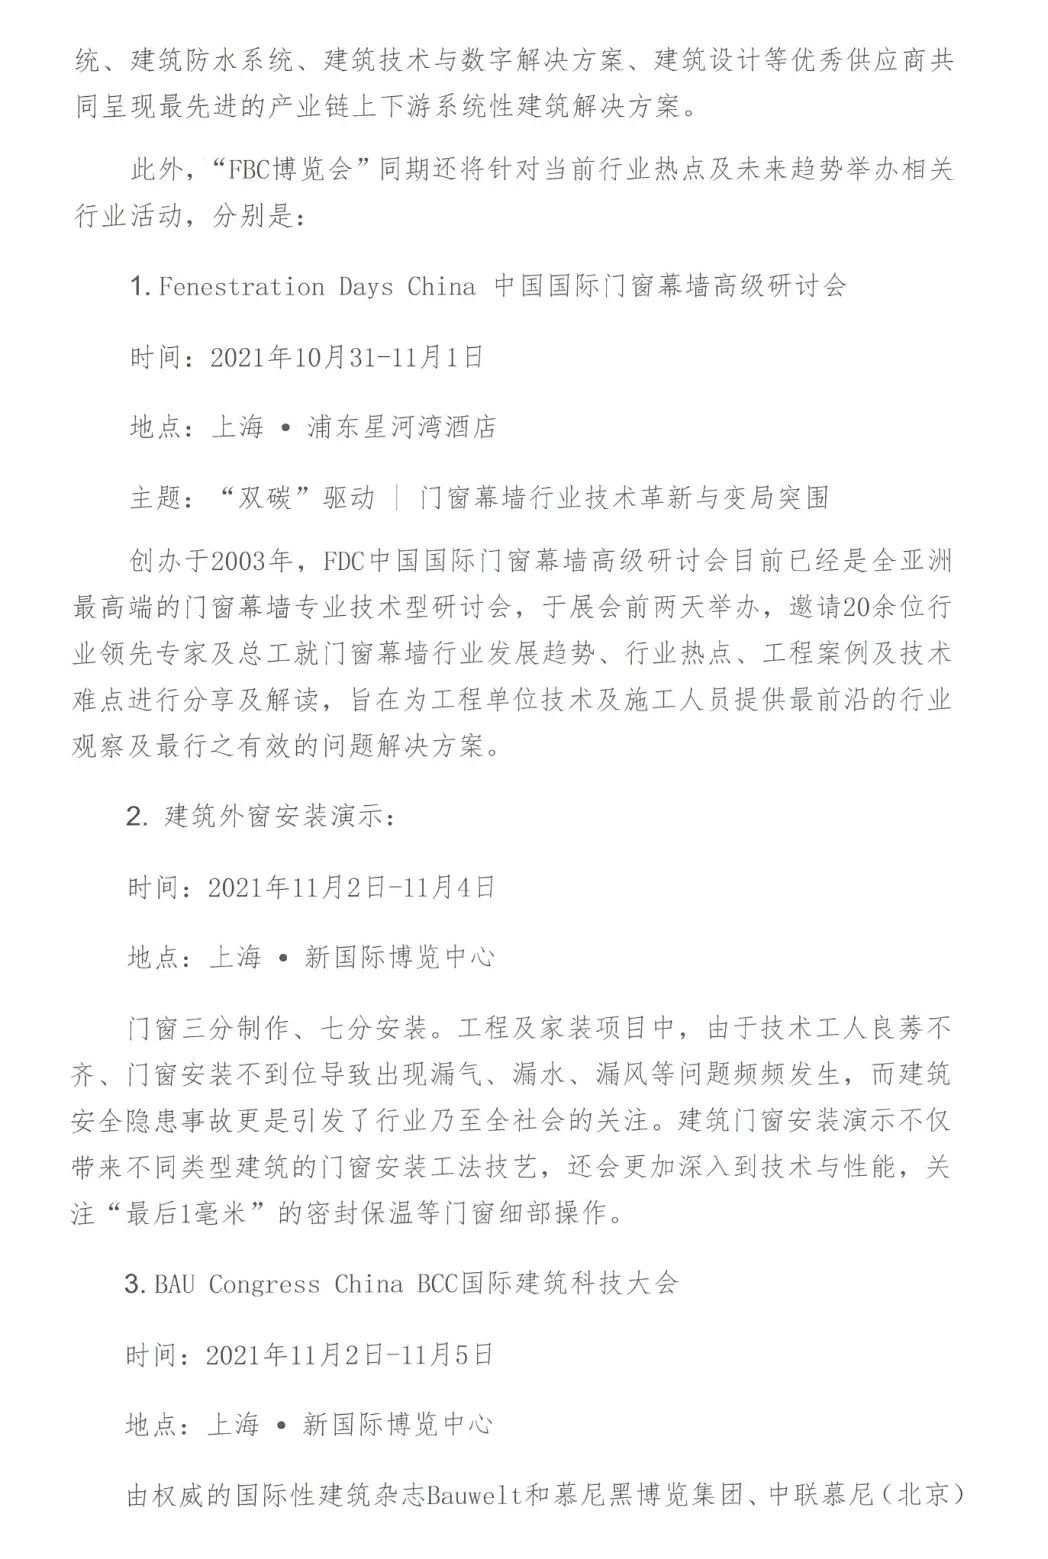 【中建金协】关于邀请组团参观“FBC中国门窗幕墙博览会”及相关活动的通知